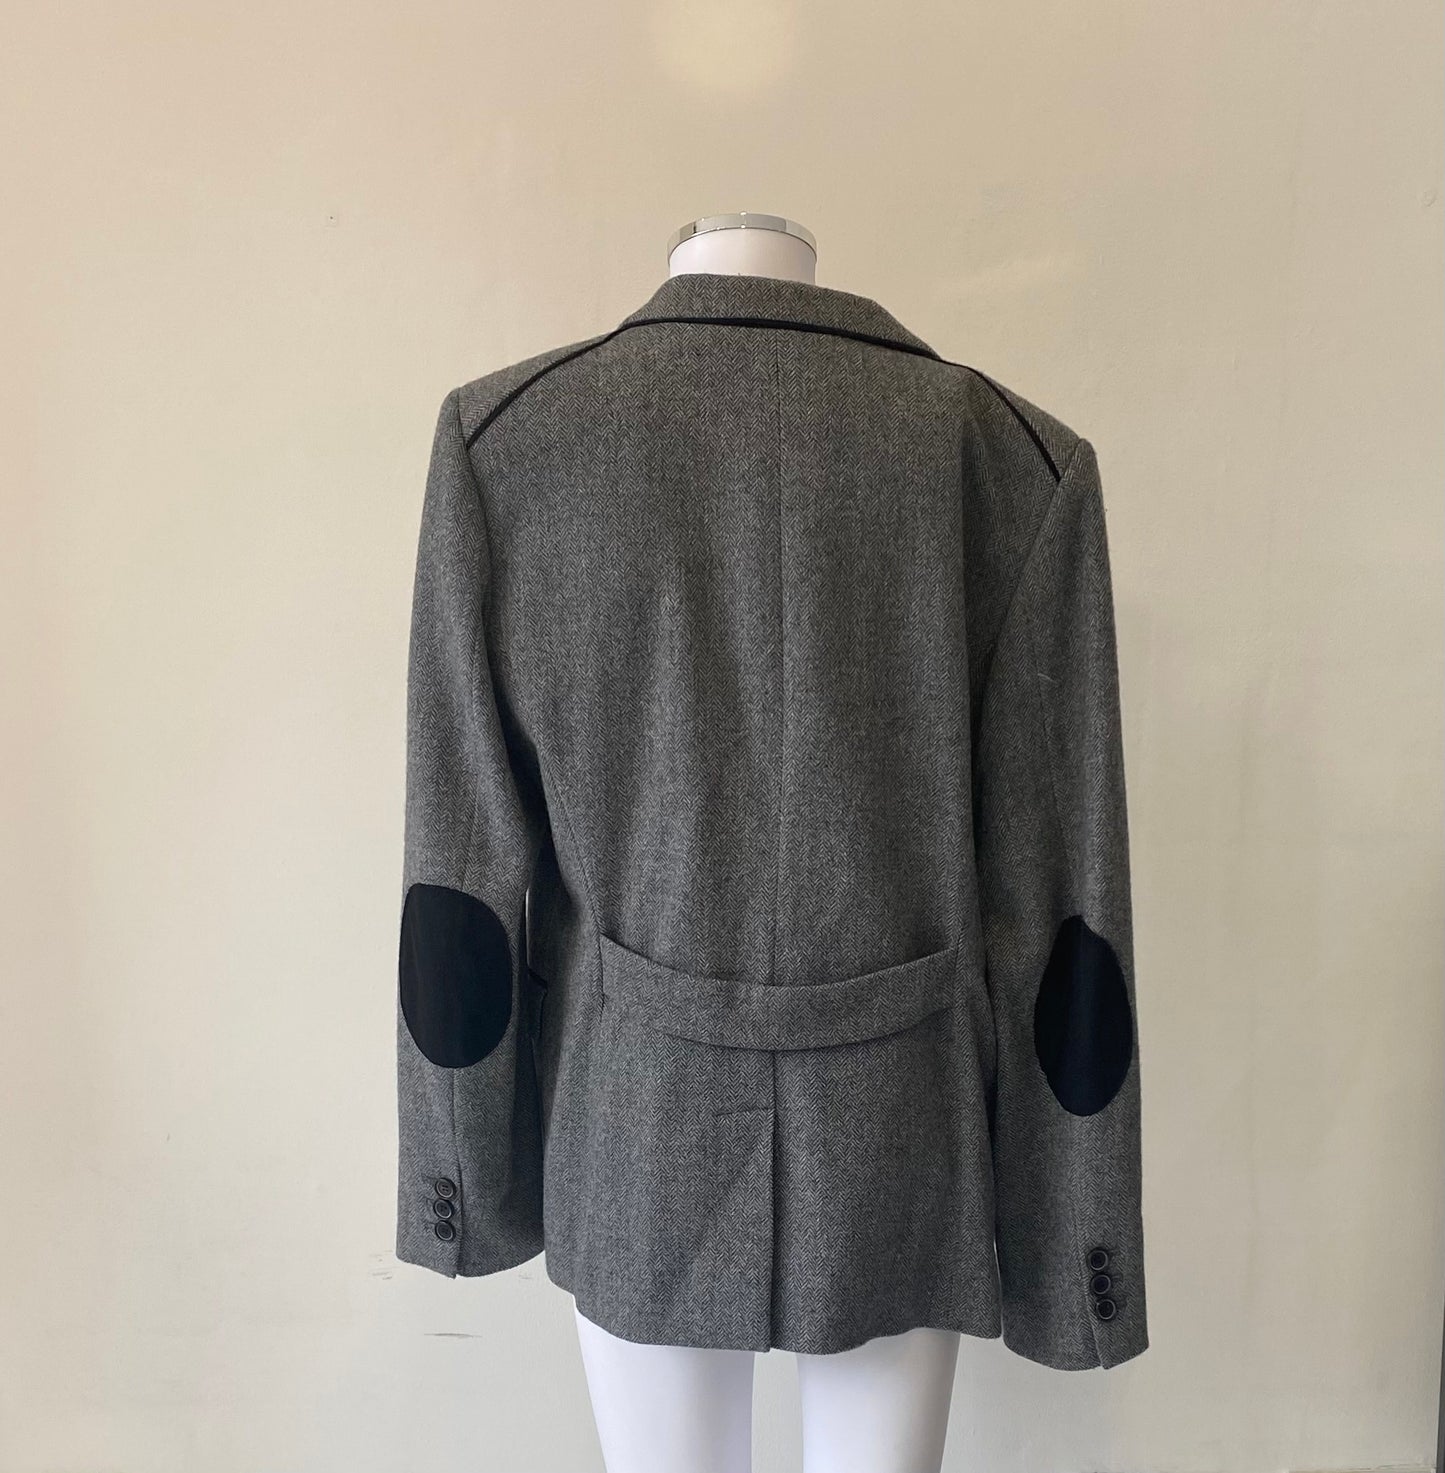 Gerard Darel Tweed Jacket Size 16-18